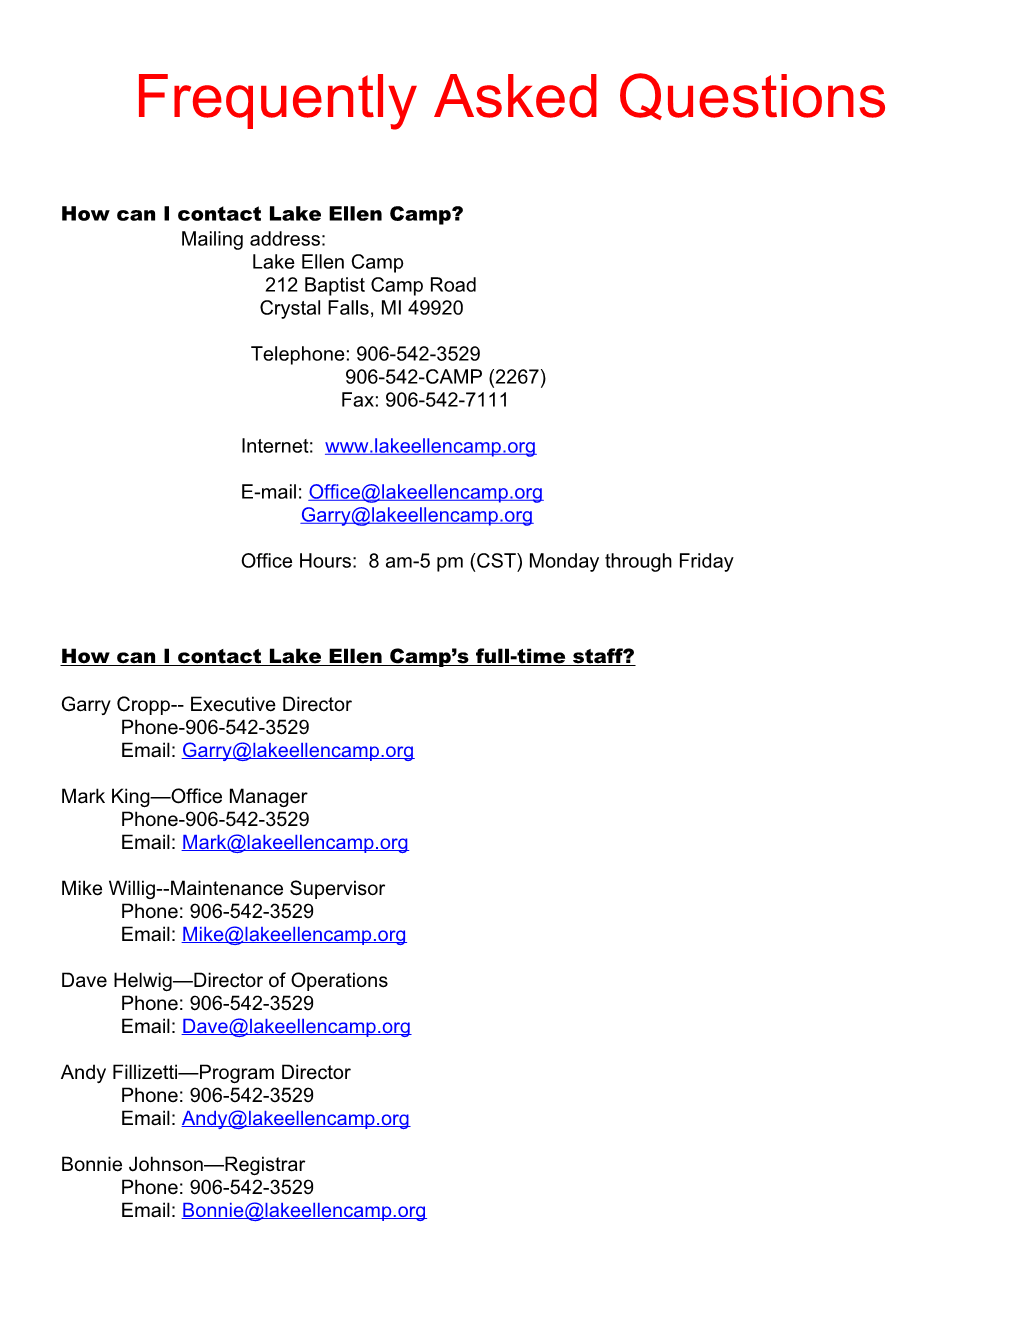 How Can I Contact Lake Ellen Camp?